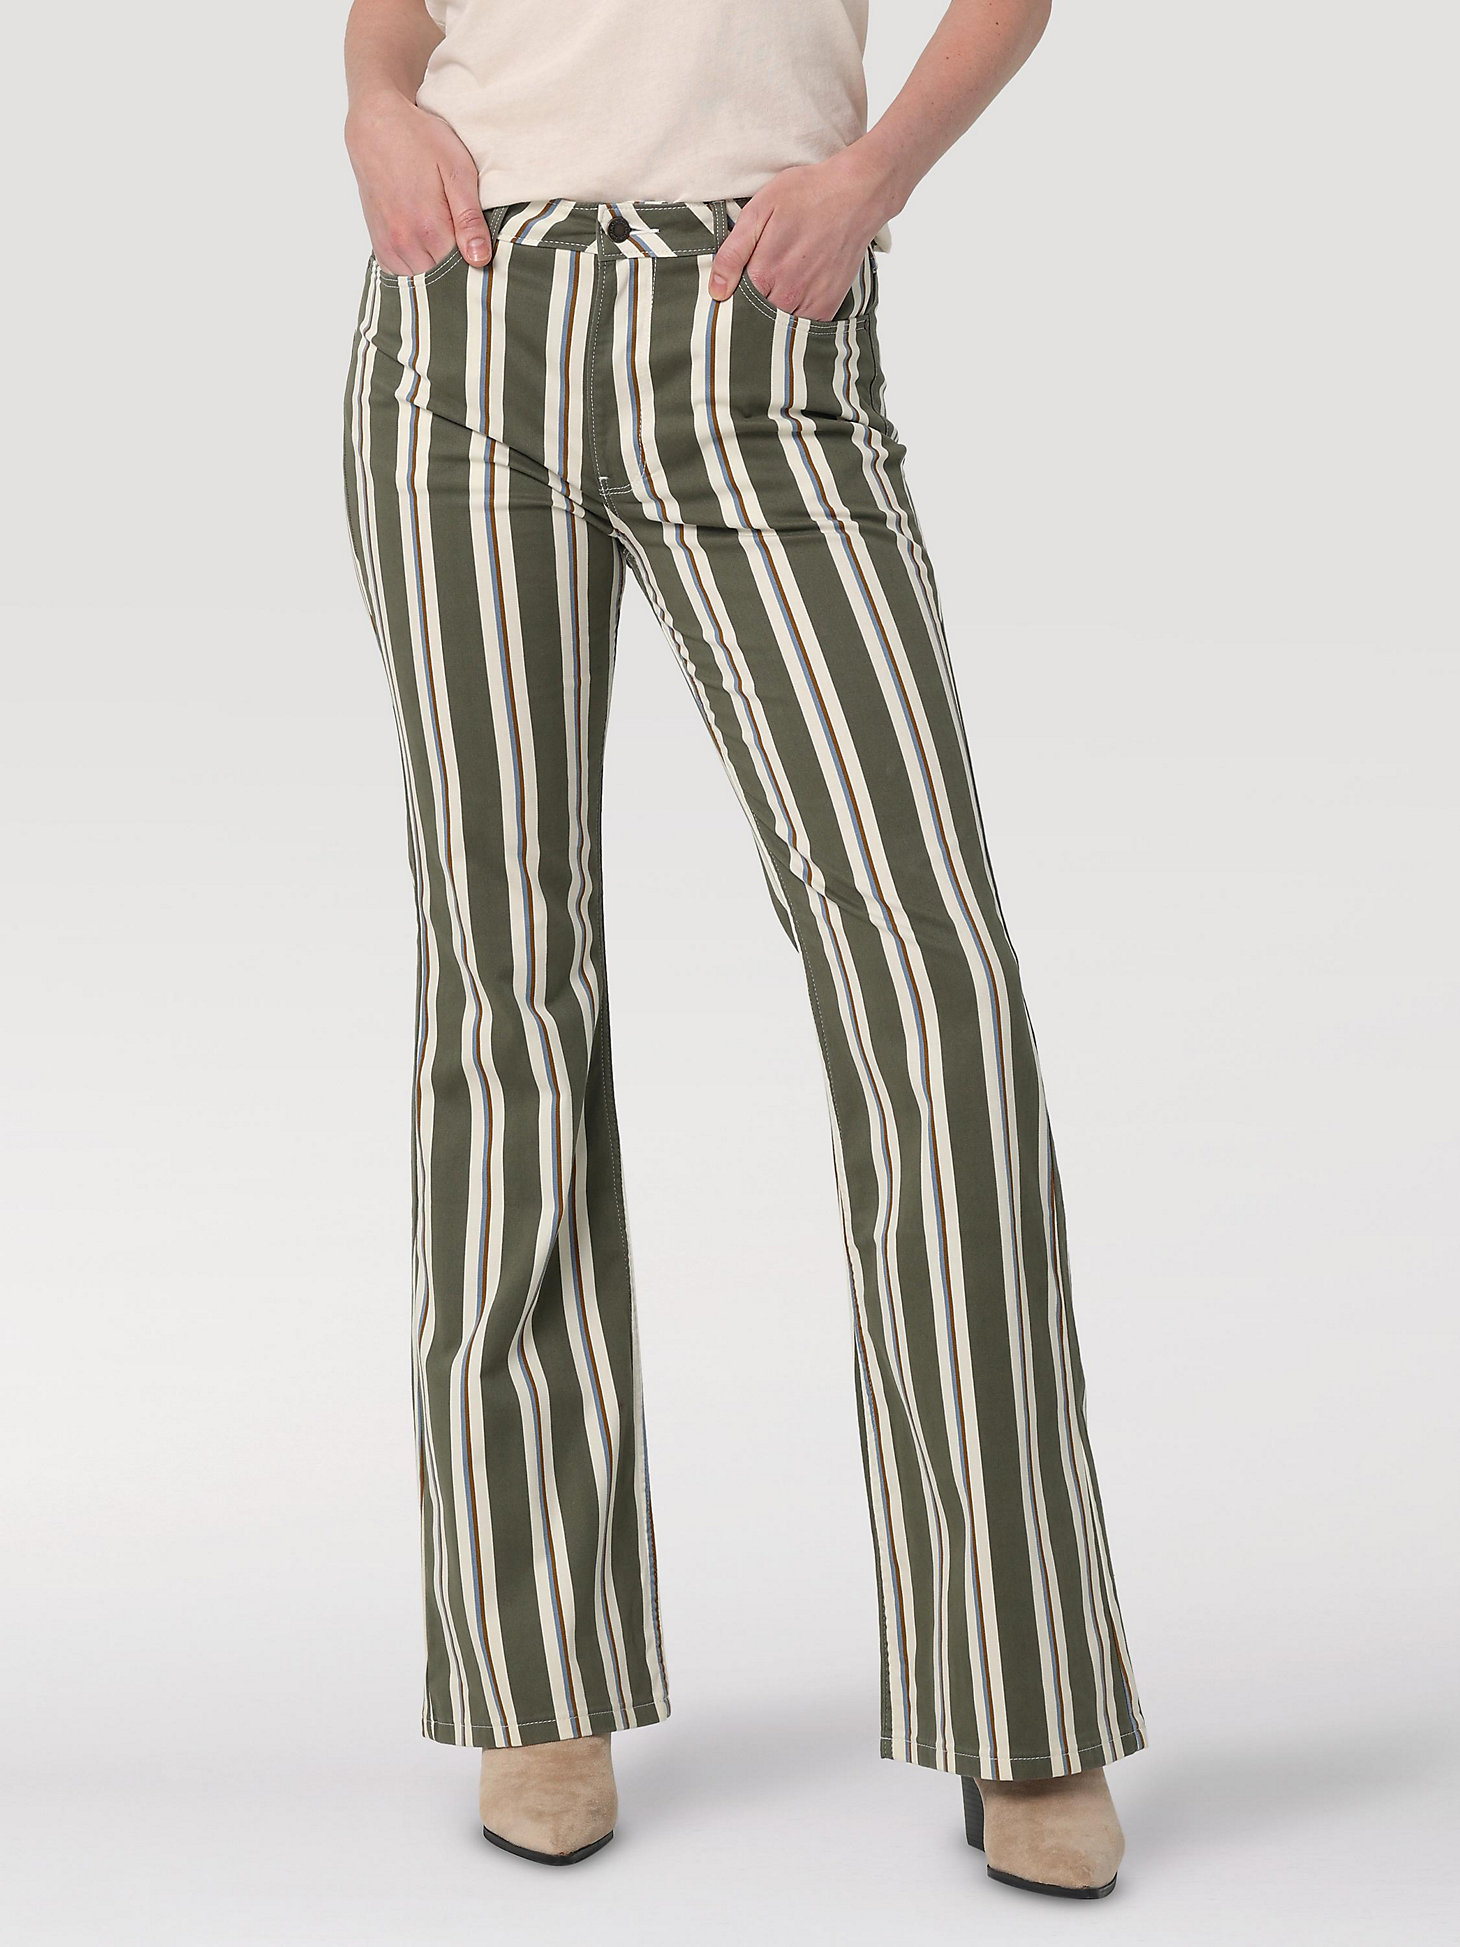 Women's Fierce Flare Stripe Jean in Moss main view